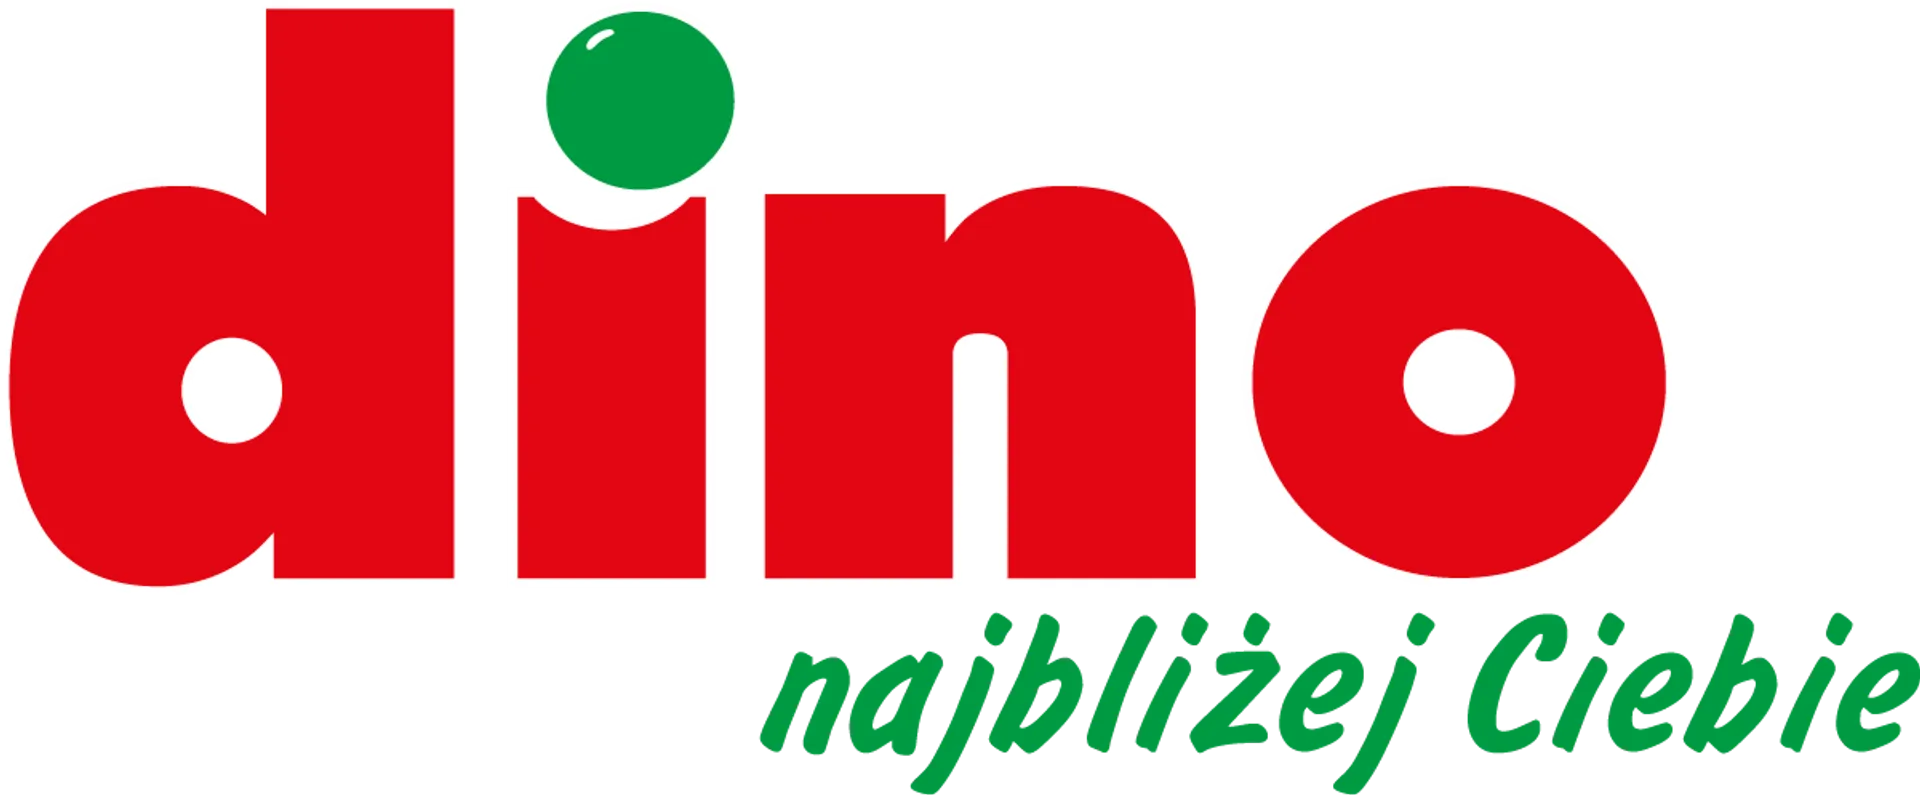 DINO logo